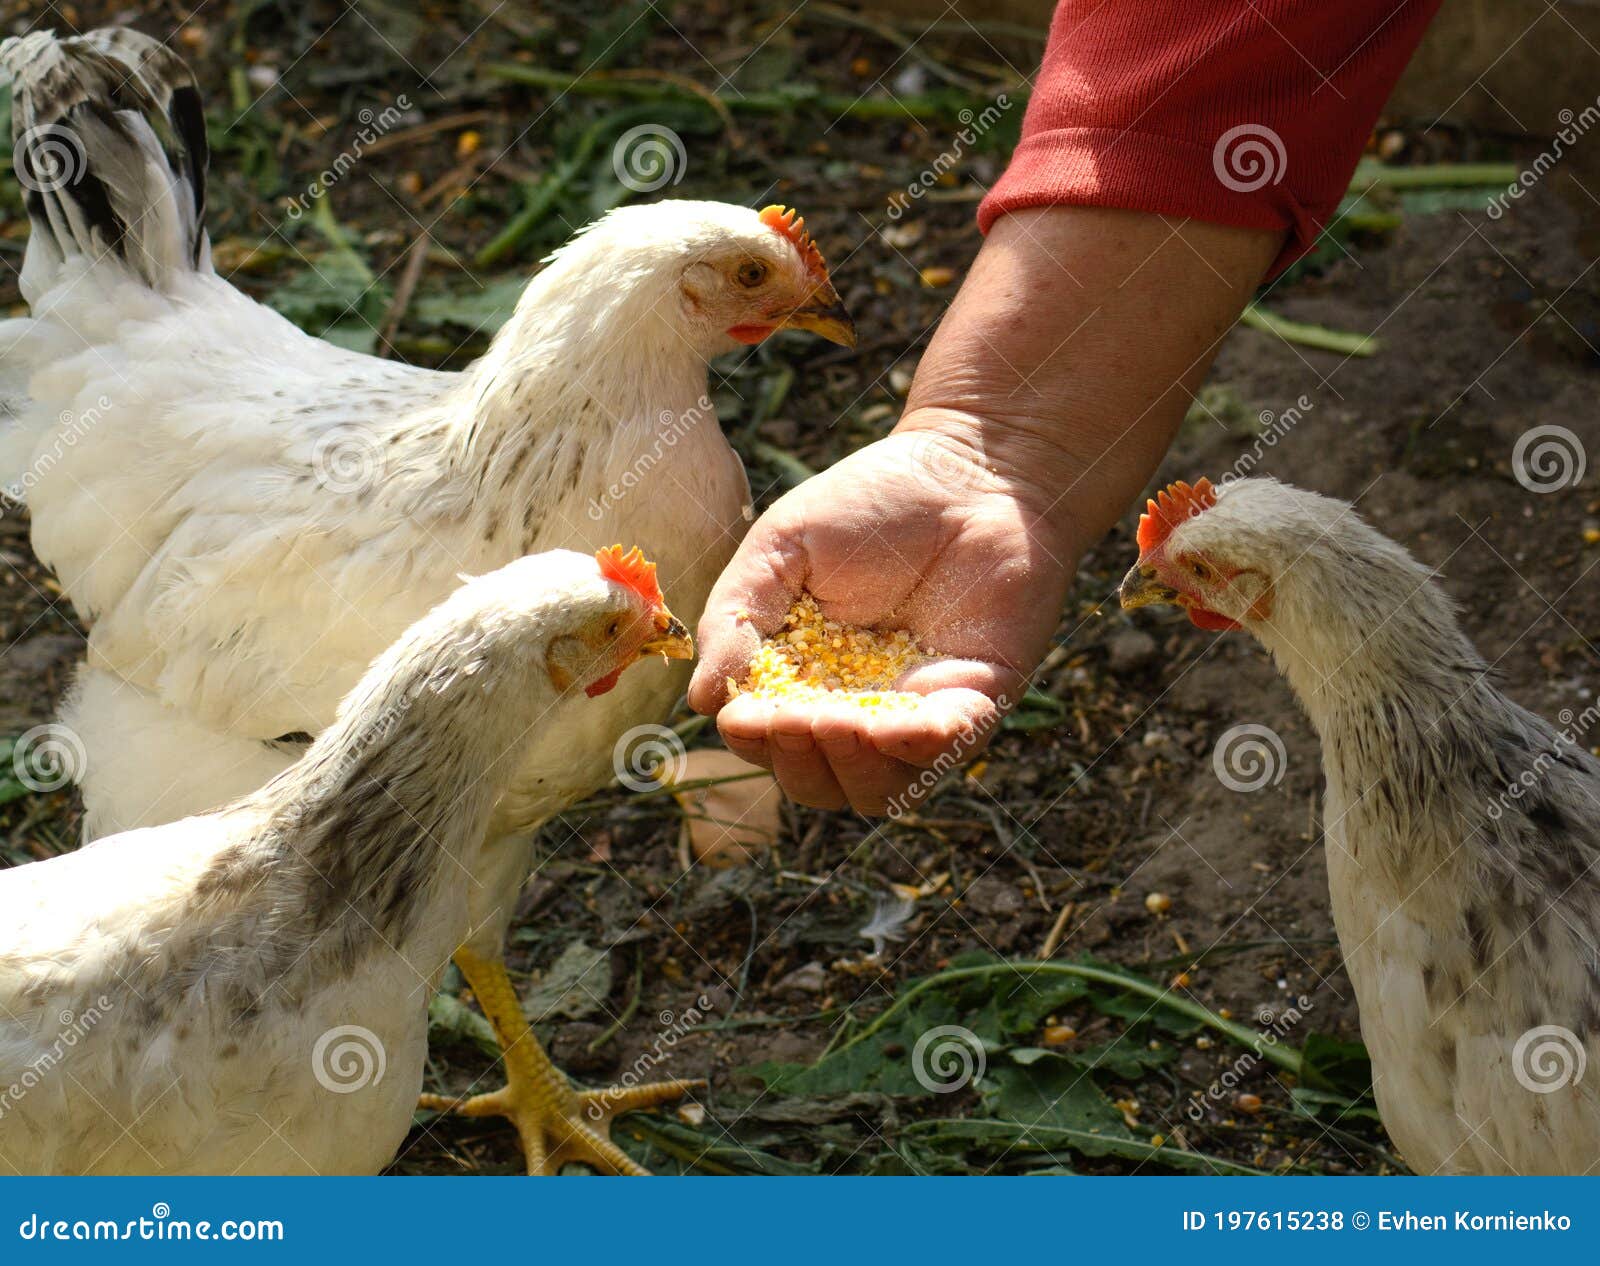 小伙给6只鸡穿尿不湿养在卫生间 ：过年朋友送的，吃不了先养着_新浪新闻